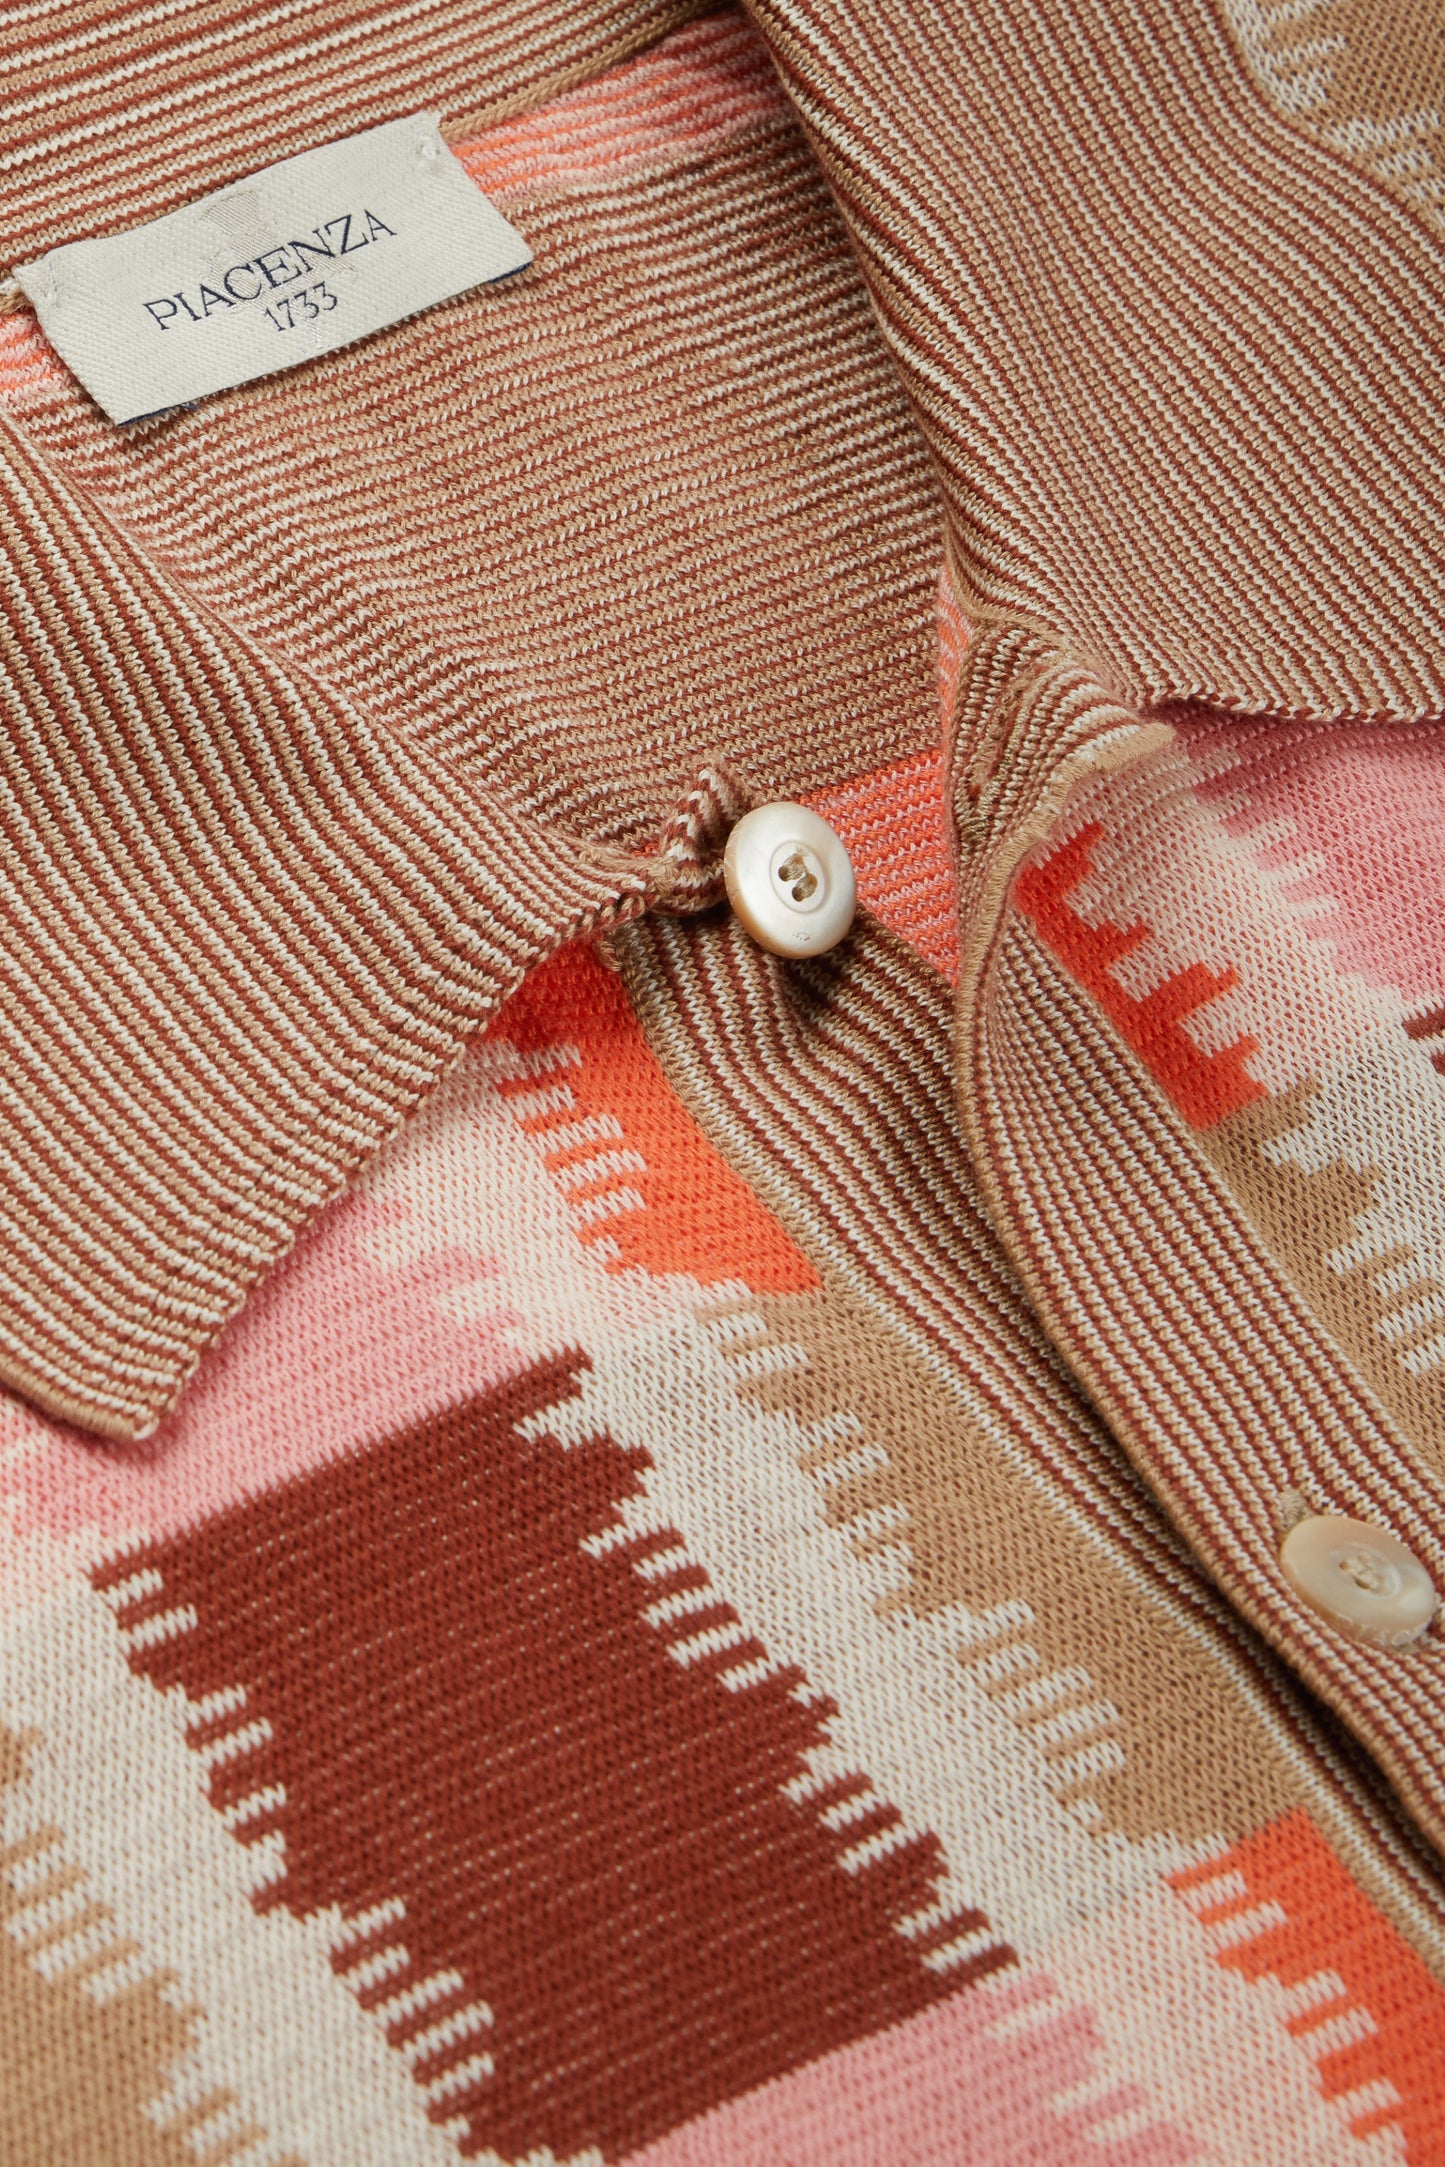 Camicia maniche corte fil a fil ikat plaid jacquard rosa, naturale e bruciato